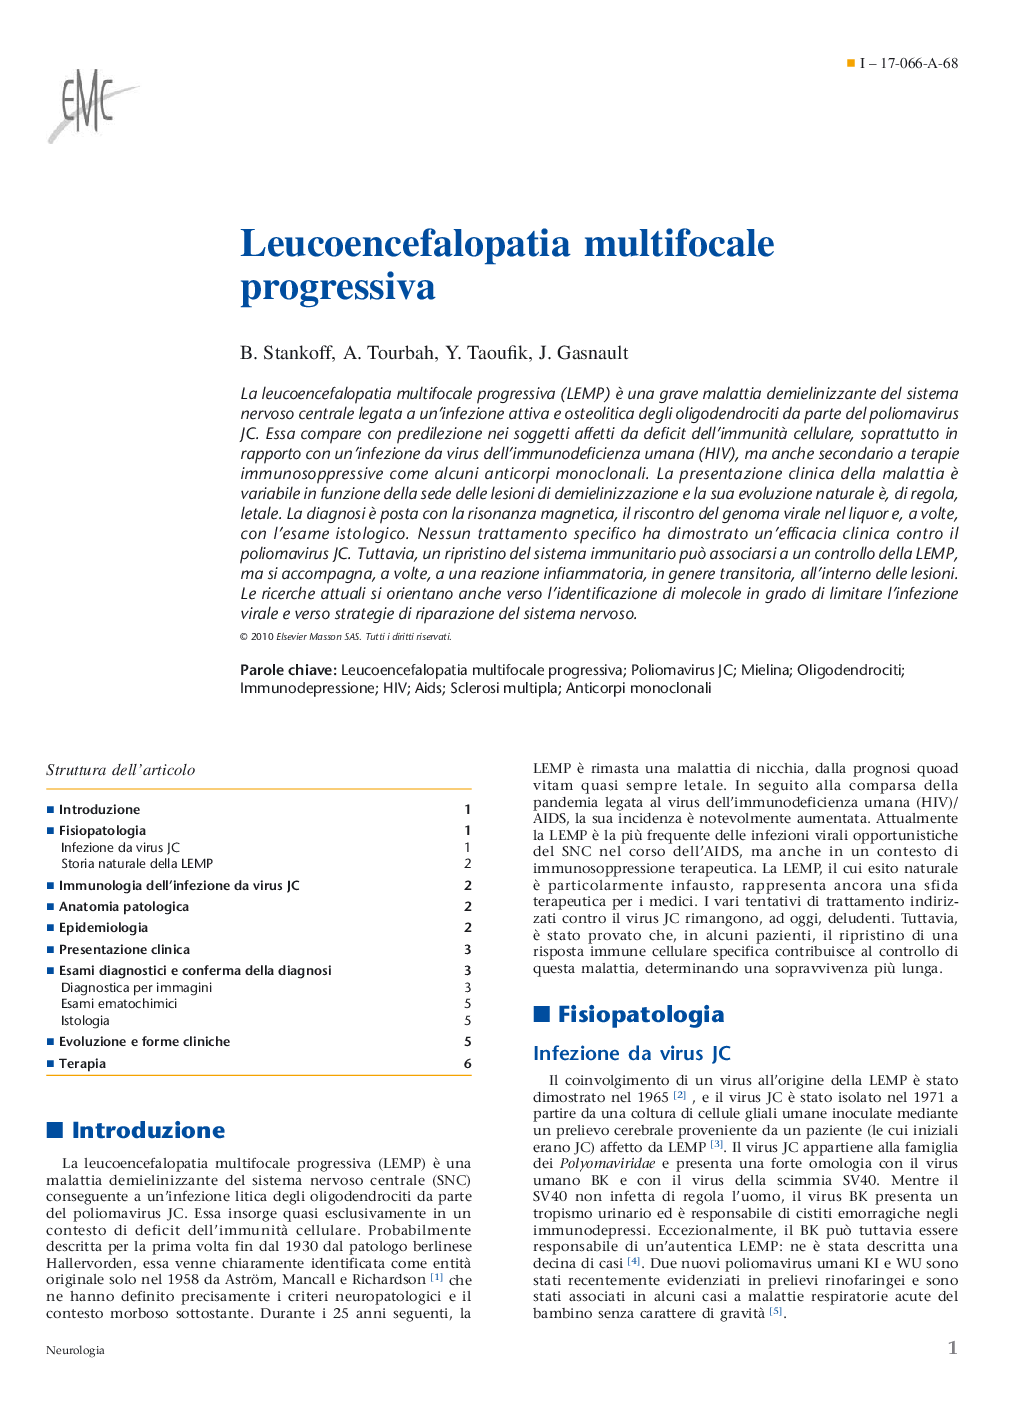 Leucoencefalopatia multifocale progressiva